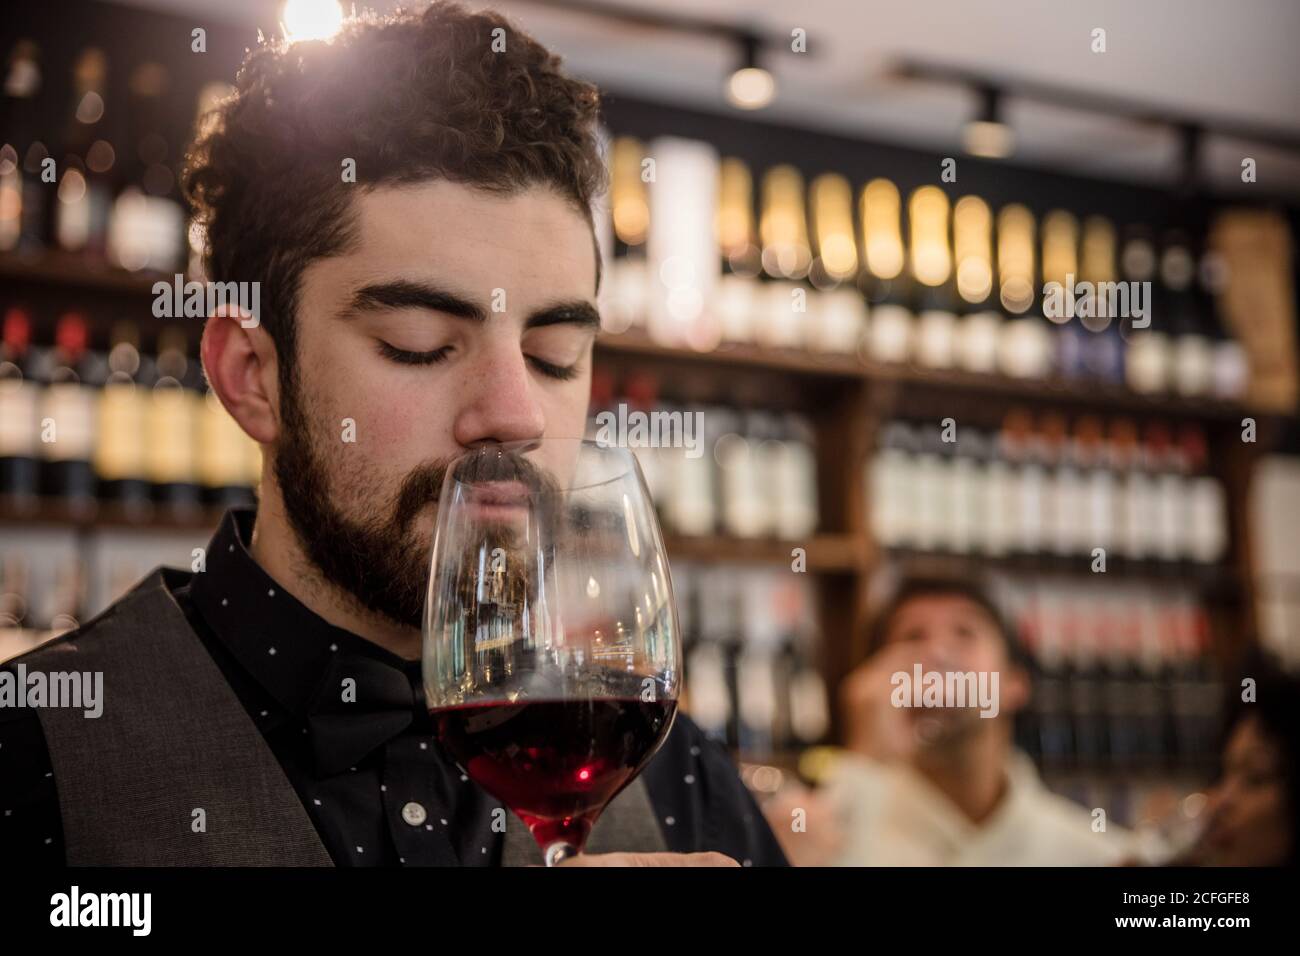 Bärtiger Sommelier in elegantem Outfit mit geschlossenen Augen und duftenden Rotwein im Glas. Stockfoto